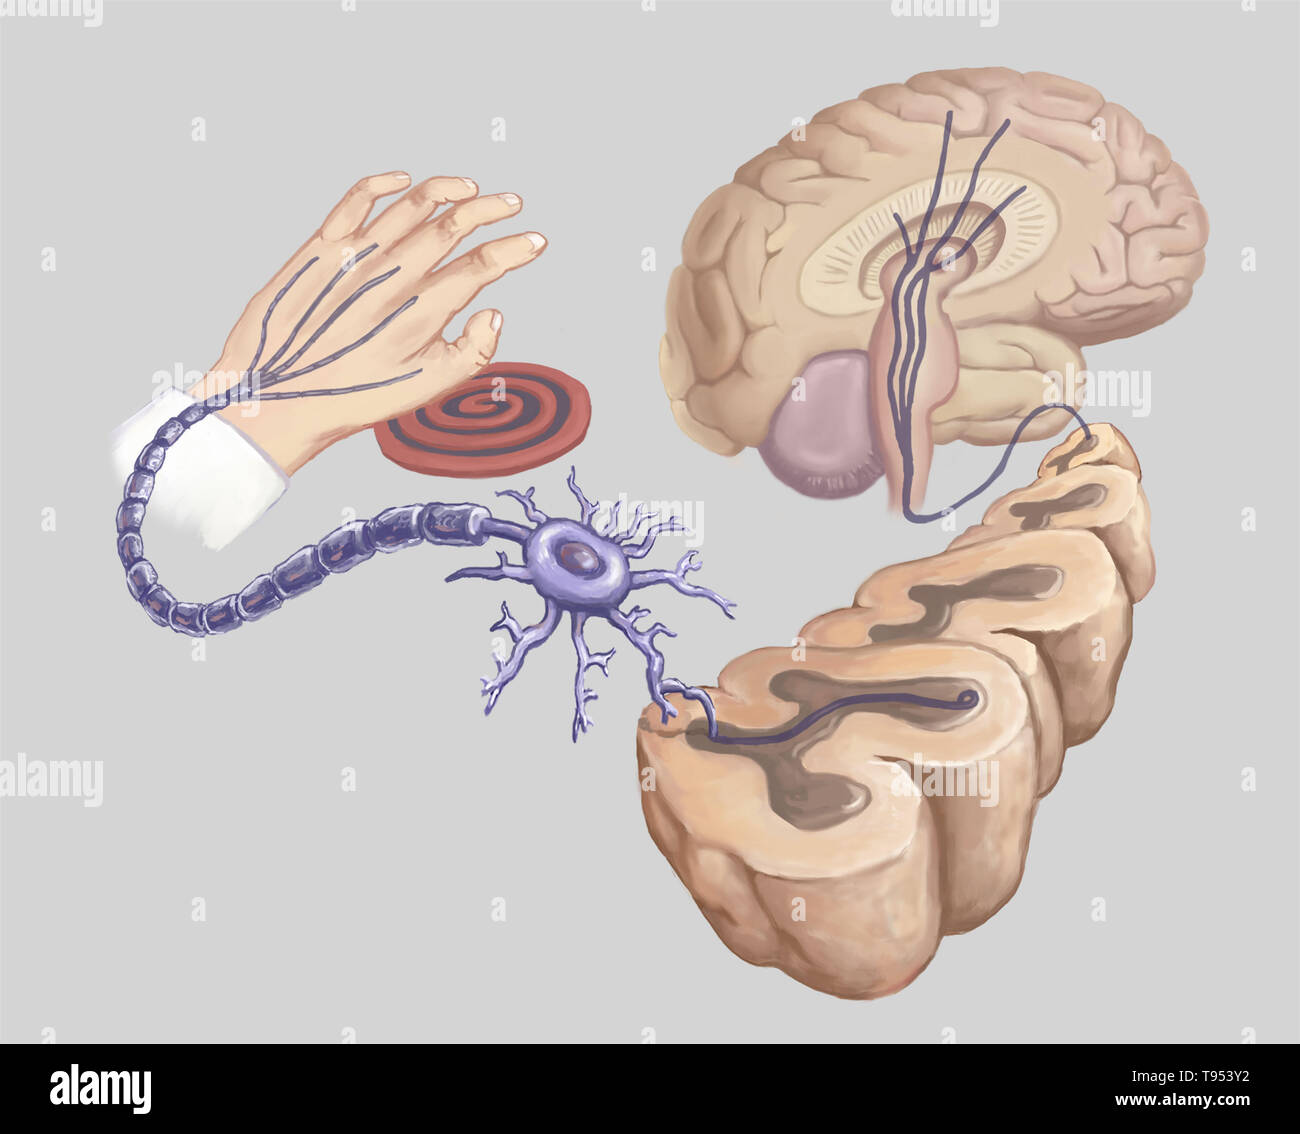 Abbildung einer Hand berühren eines heißen Herd Element und Reaktion in neuronale Schaltkreise des Körpers. Stockfoto